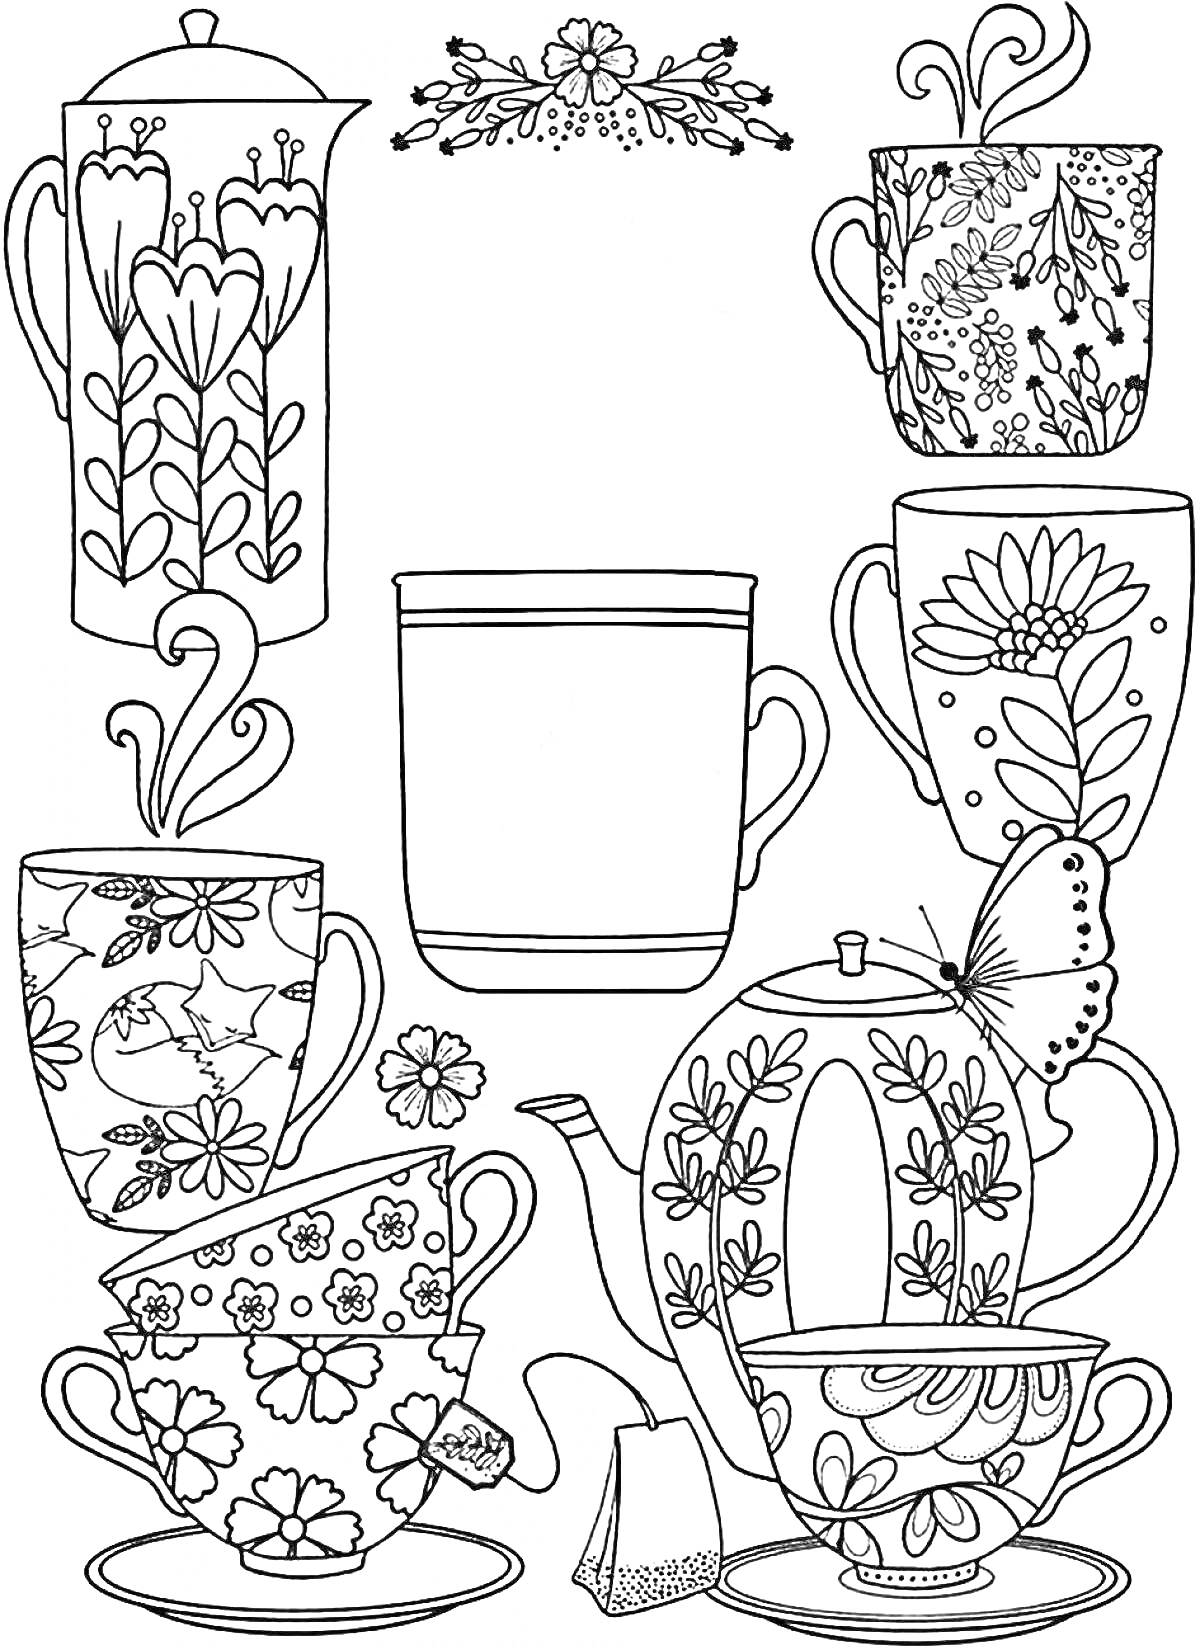 Раскраска набор чайников и чашек с цветочными узорами и бабочкой